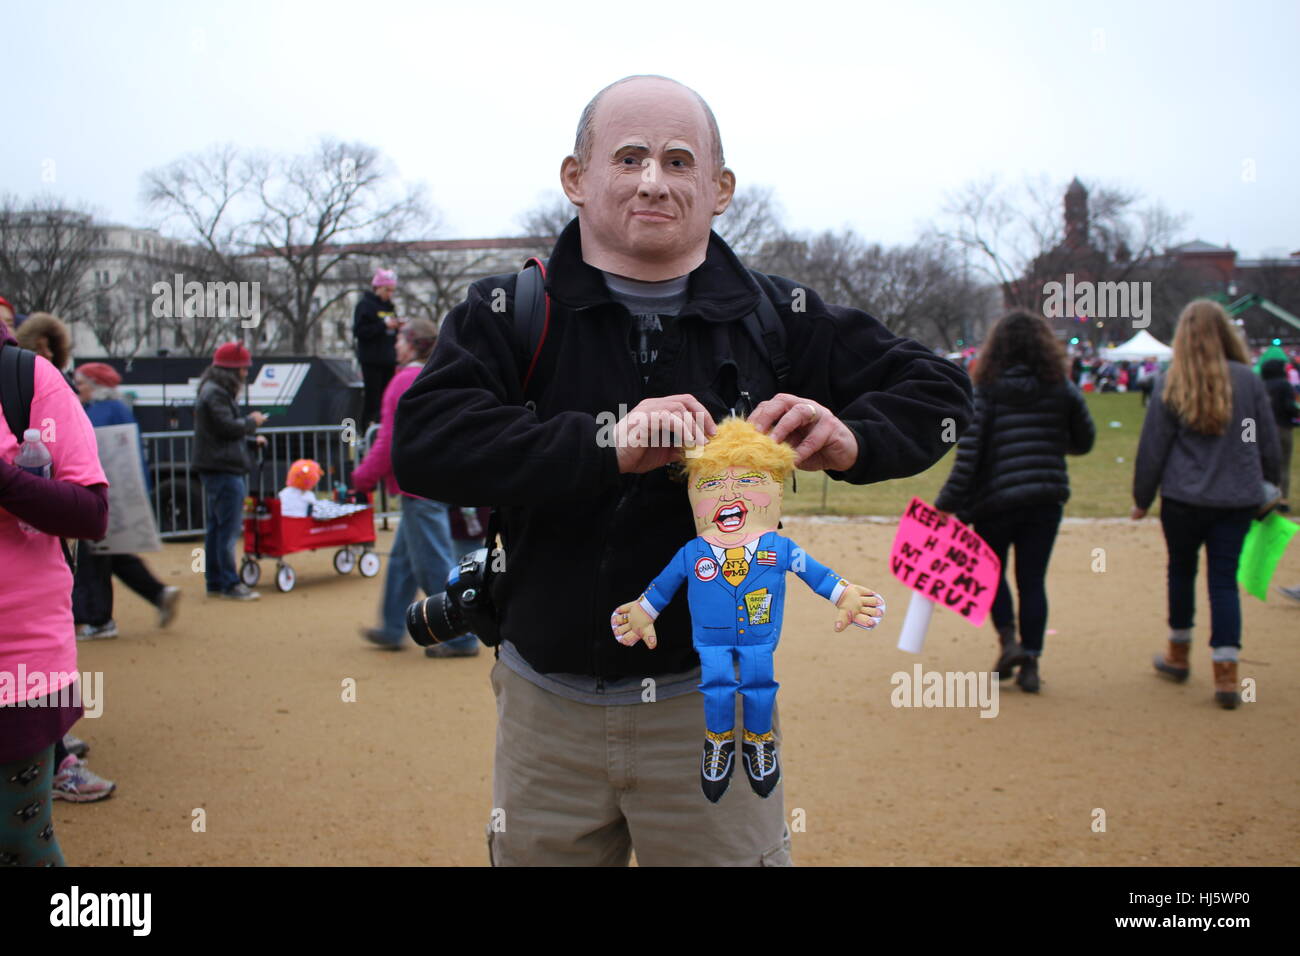 Distrikt von Columbia, USA. 21 Jan, 2017. Ein Mann trägt eine Maske des russischen Präsidenten Wladimir Putin und hält eine Puppe von Präsident Donald Trump. Stockfoto